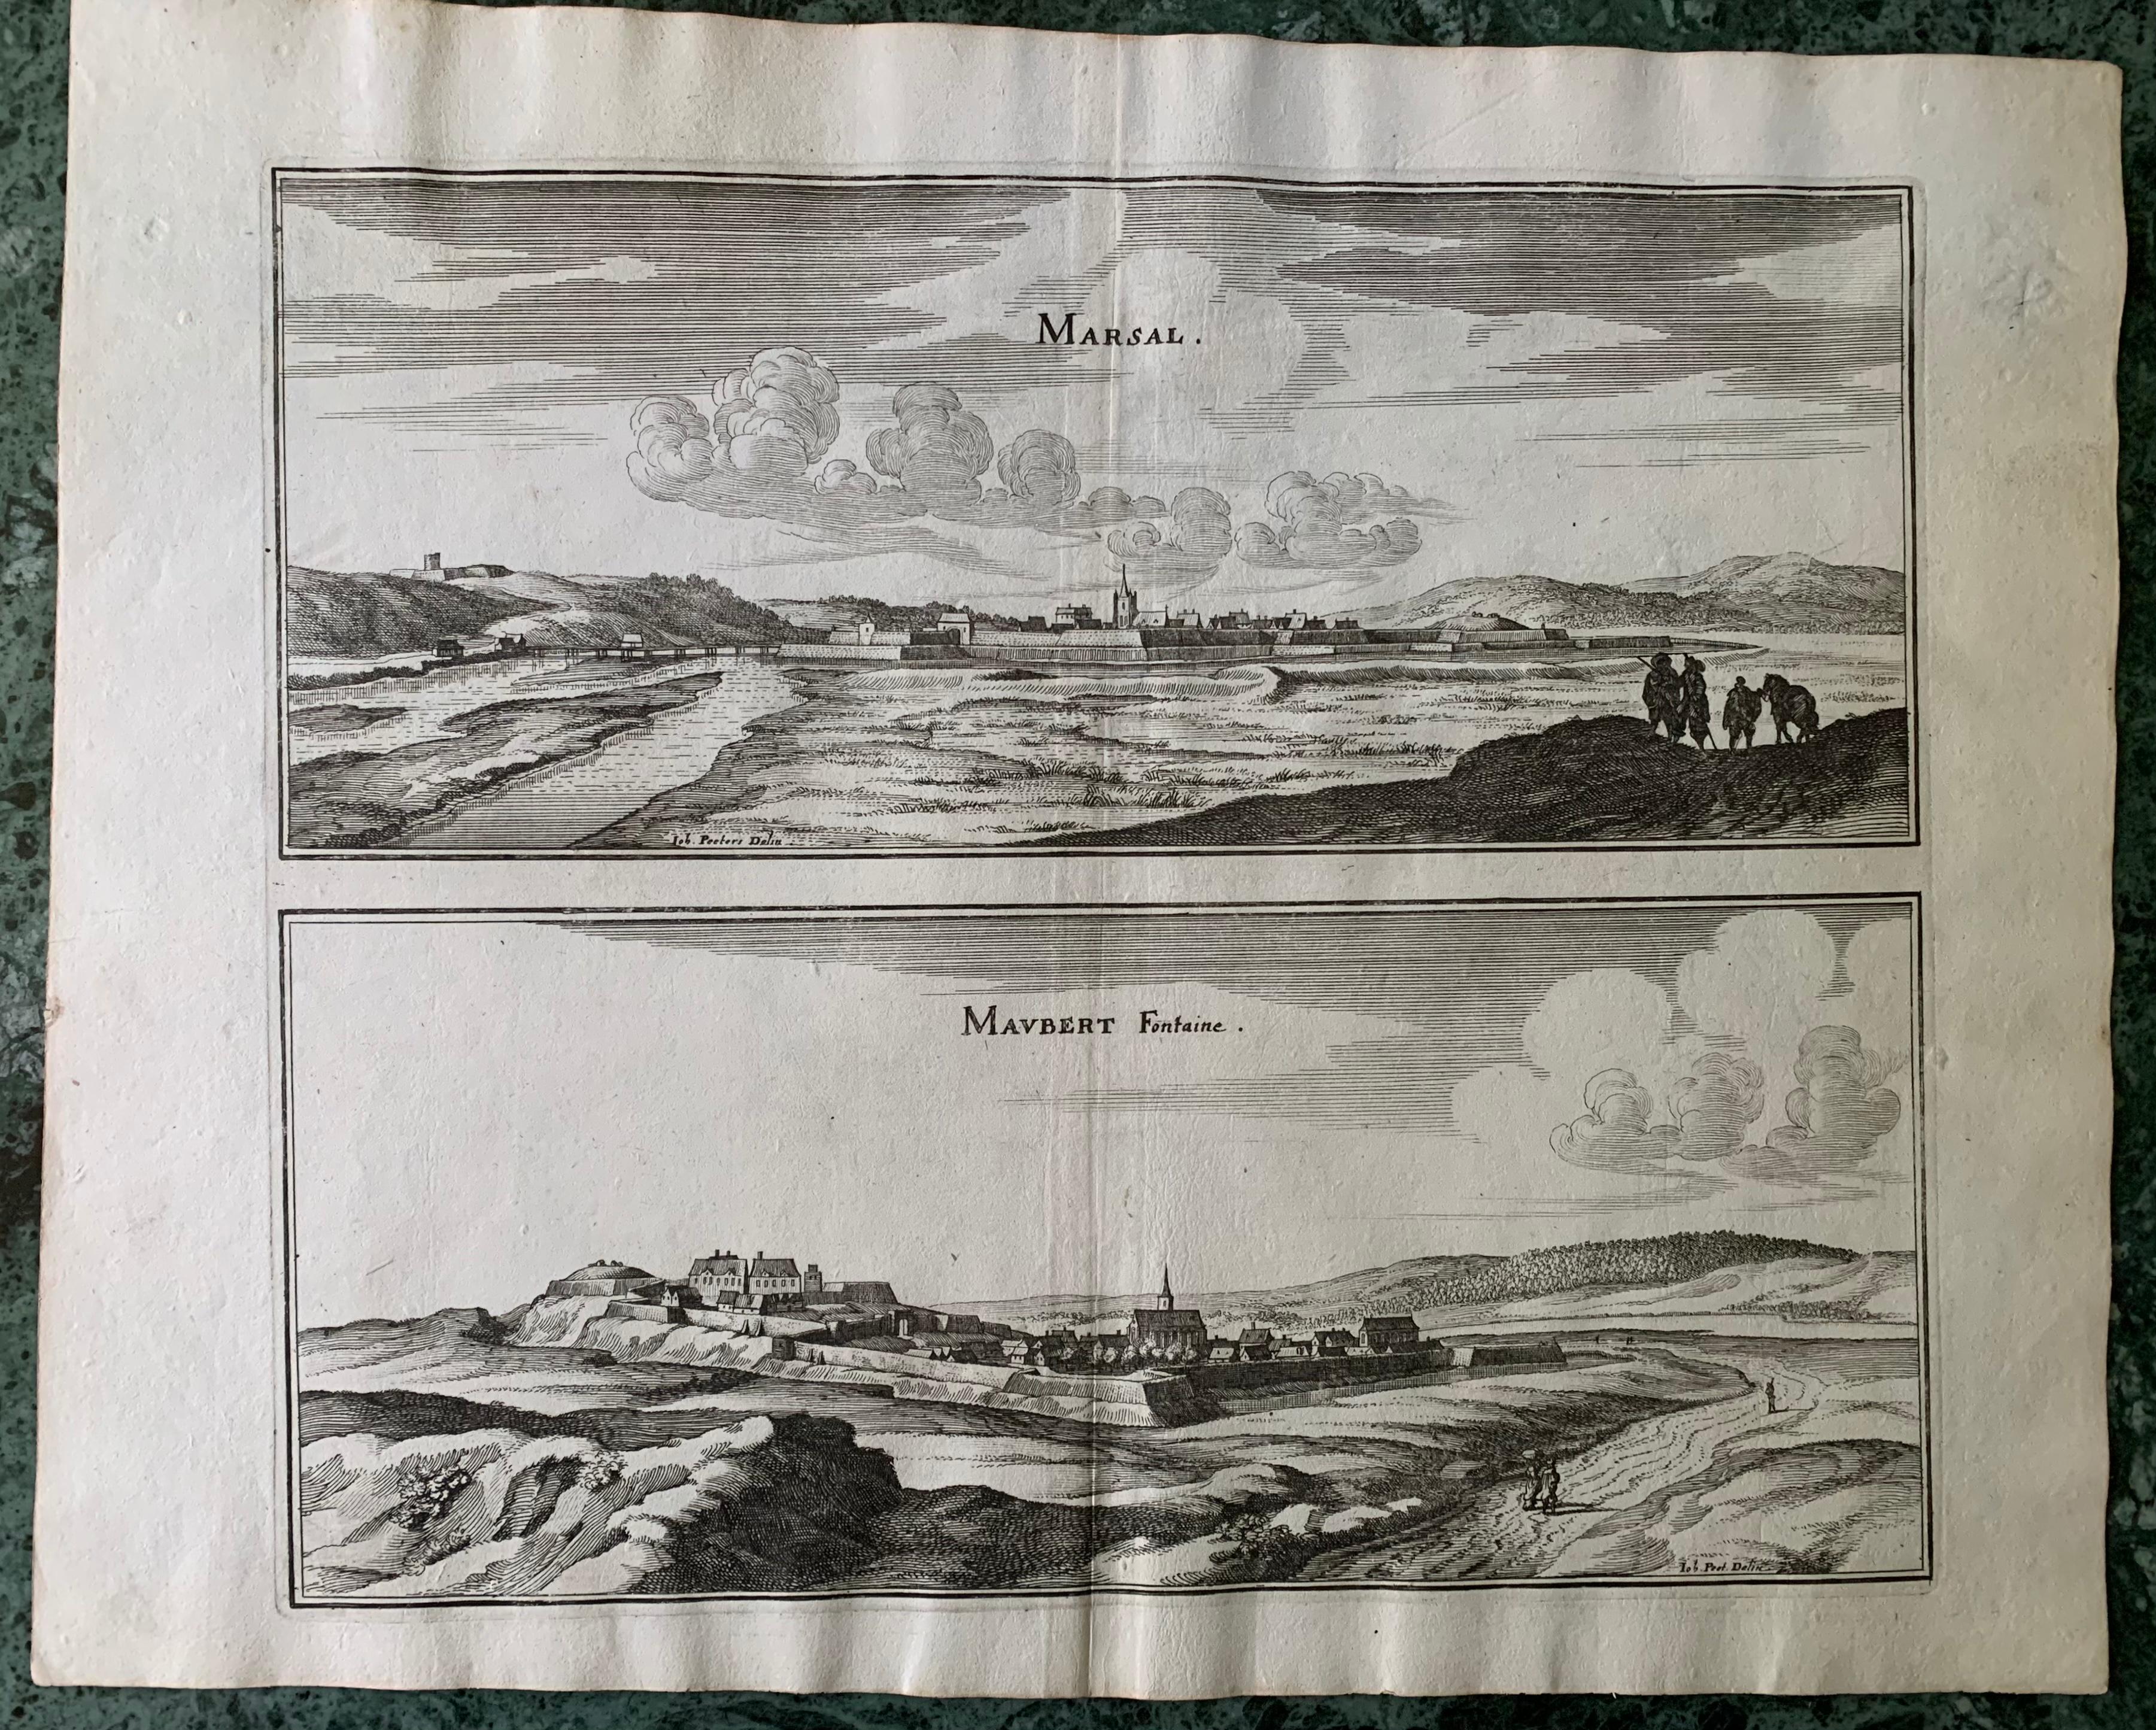 Topographische Karte des 17. Jahrhunderts, Champagne-Ardenne, Marsal, Maubert Iohan Peeters im Angebot 2